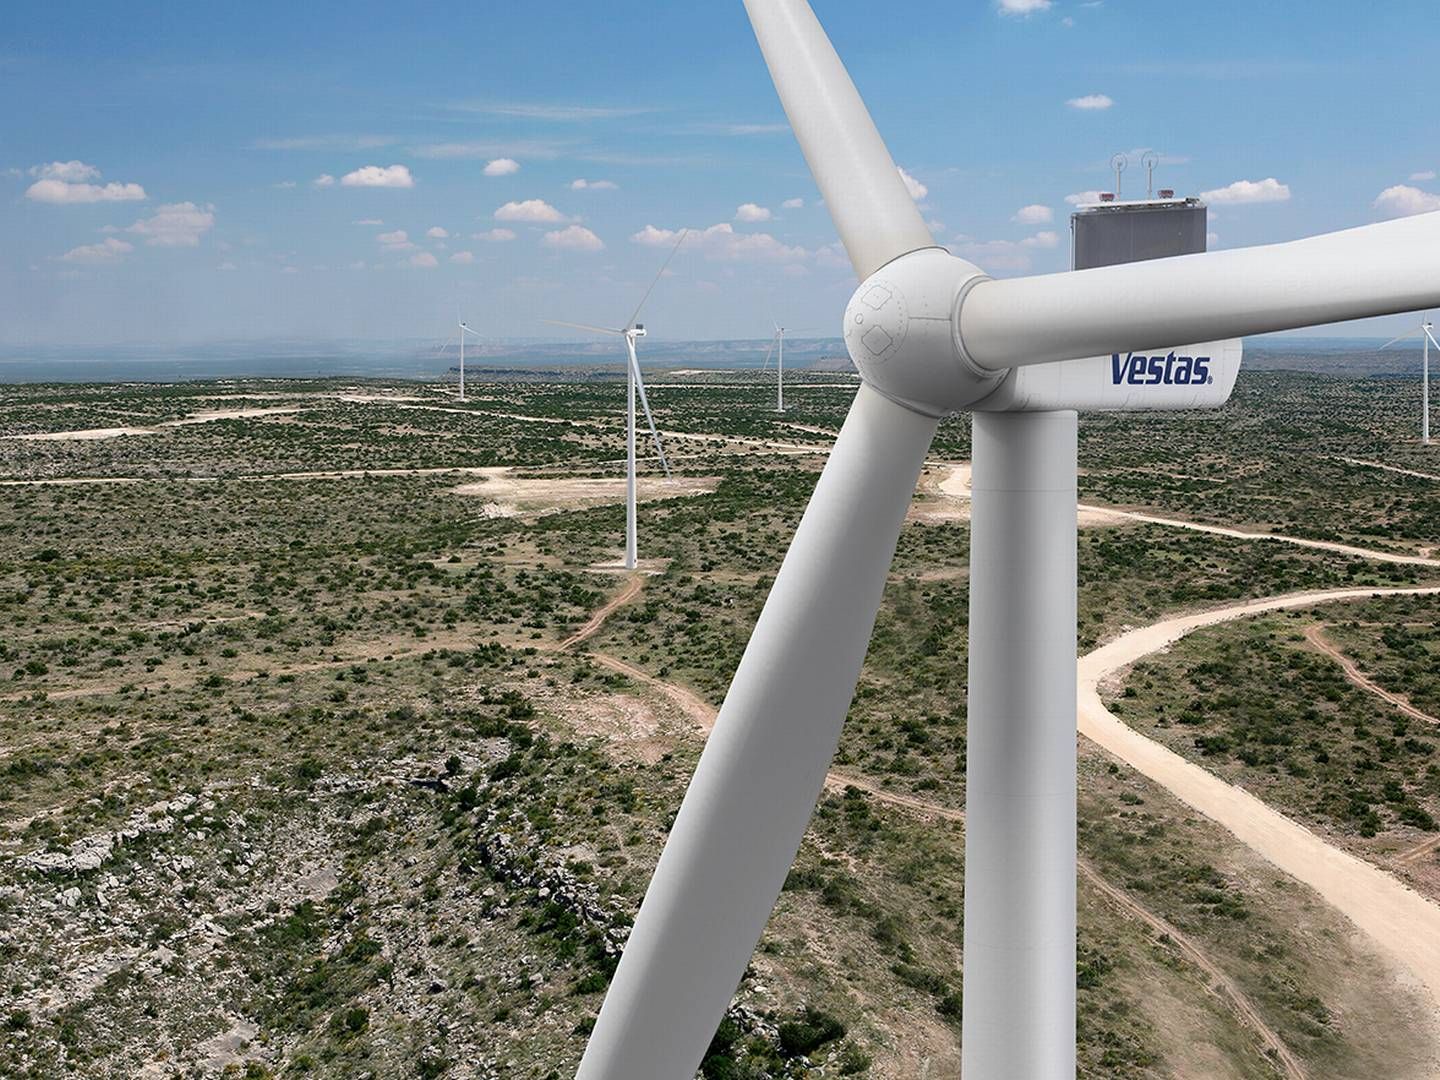 På baggrund af forlængelsen af samarbejdet ses en stigning i ordrerne til Aeris fra den danske vindmølleproducent til en samlet kapacitet på 8,8 gigawatt gennem hele samarbejdet. | Foto: vestas